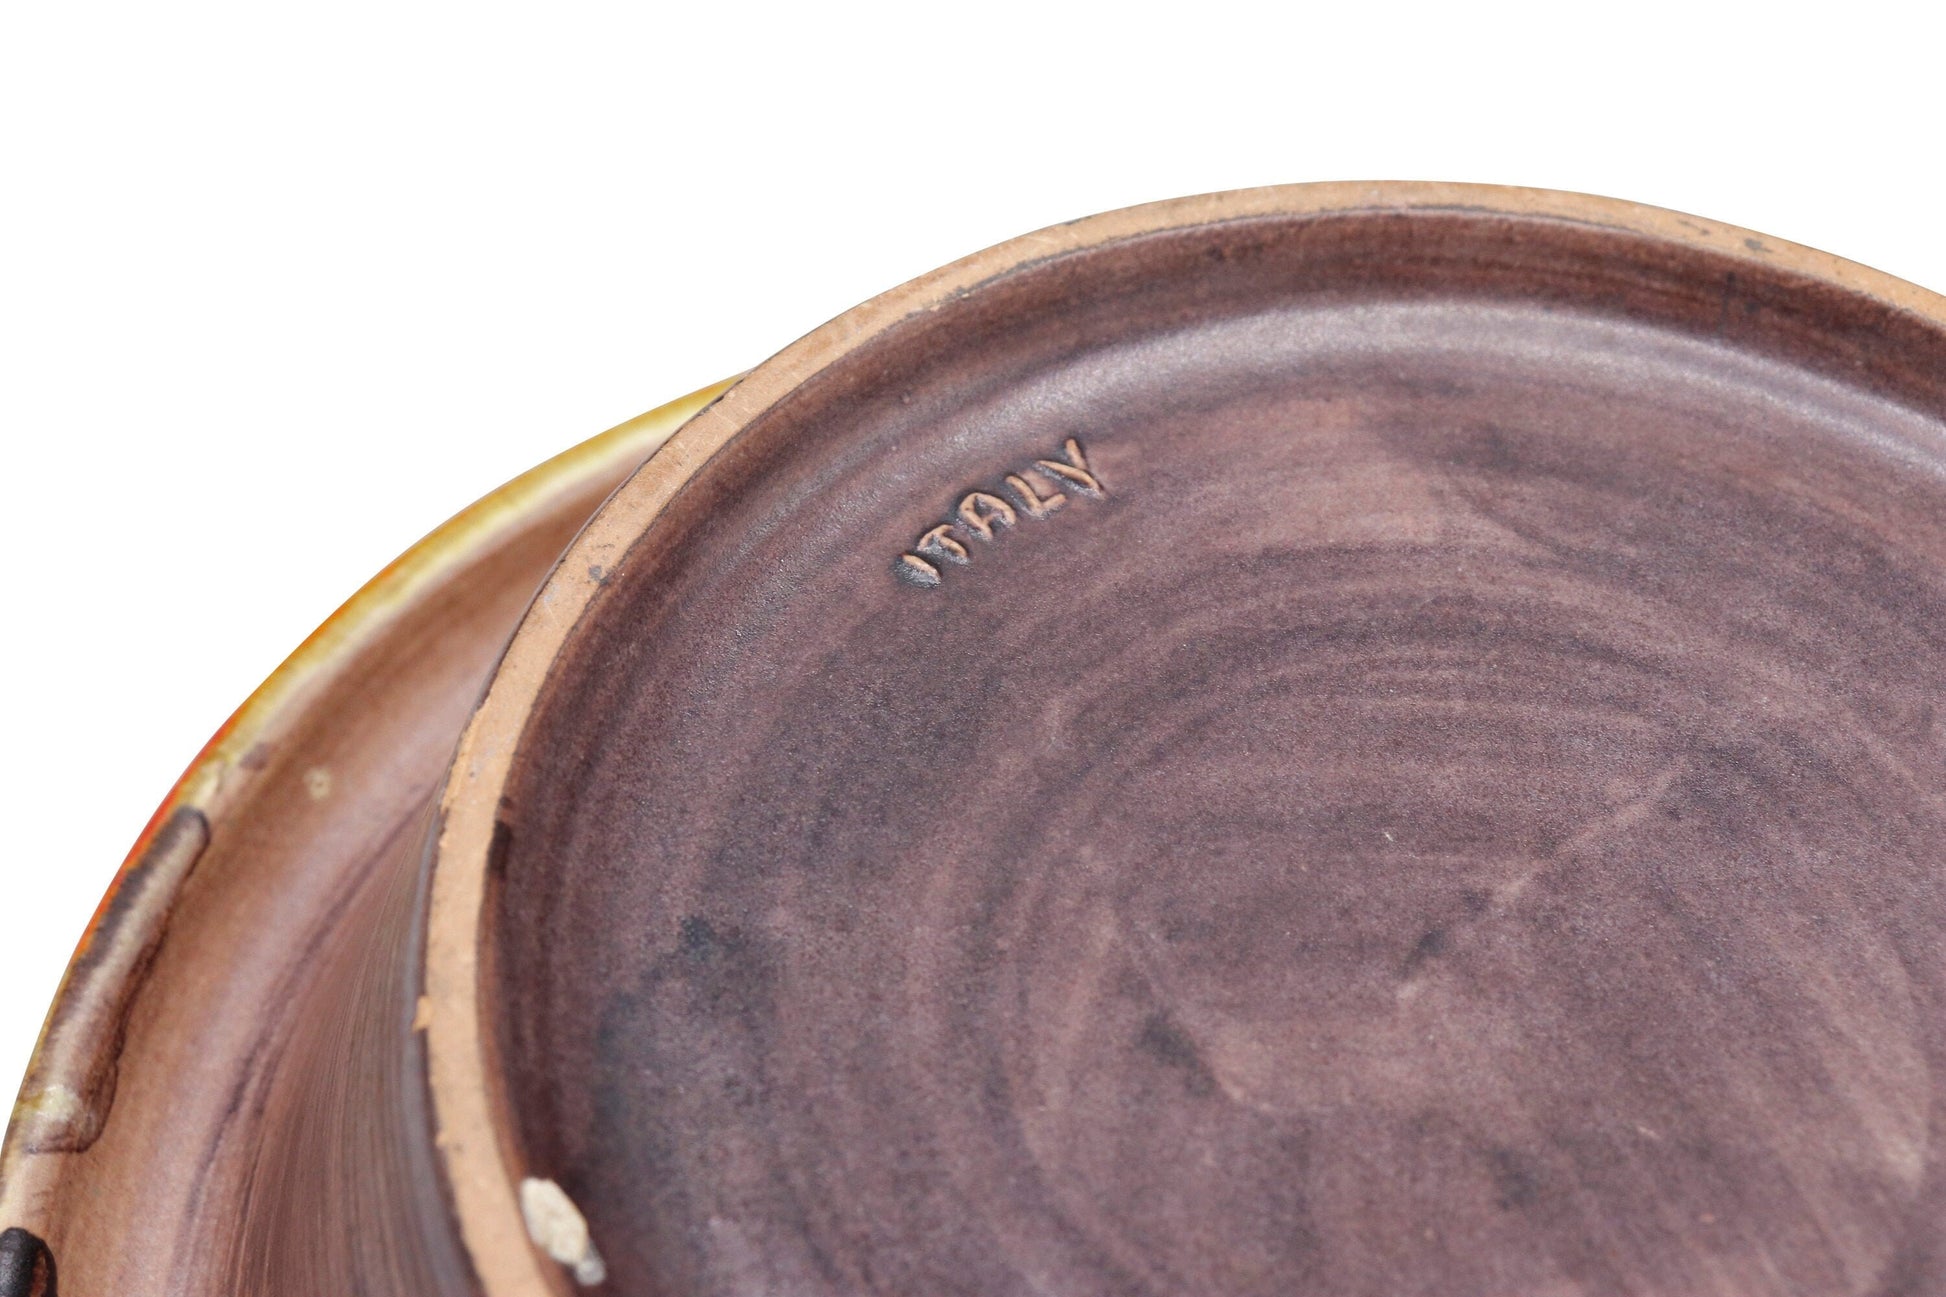 Mid century handmade pottery ashtray signed on the bottom 1970s circa